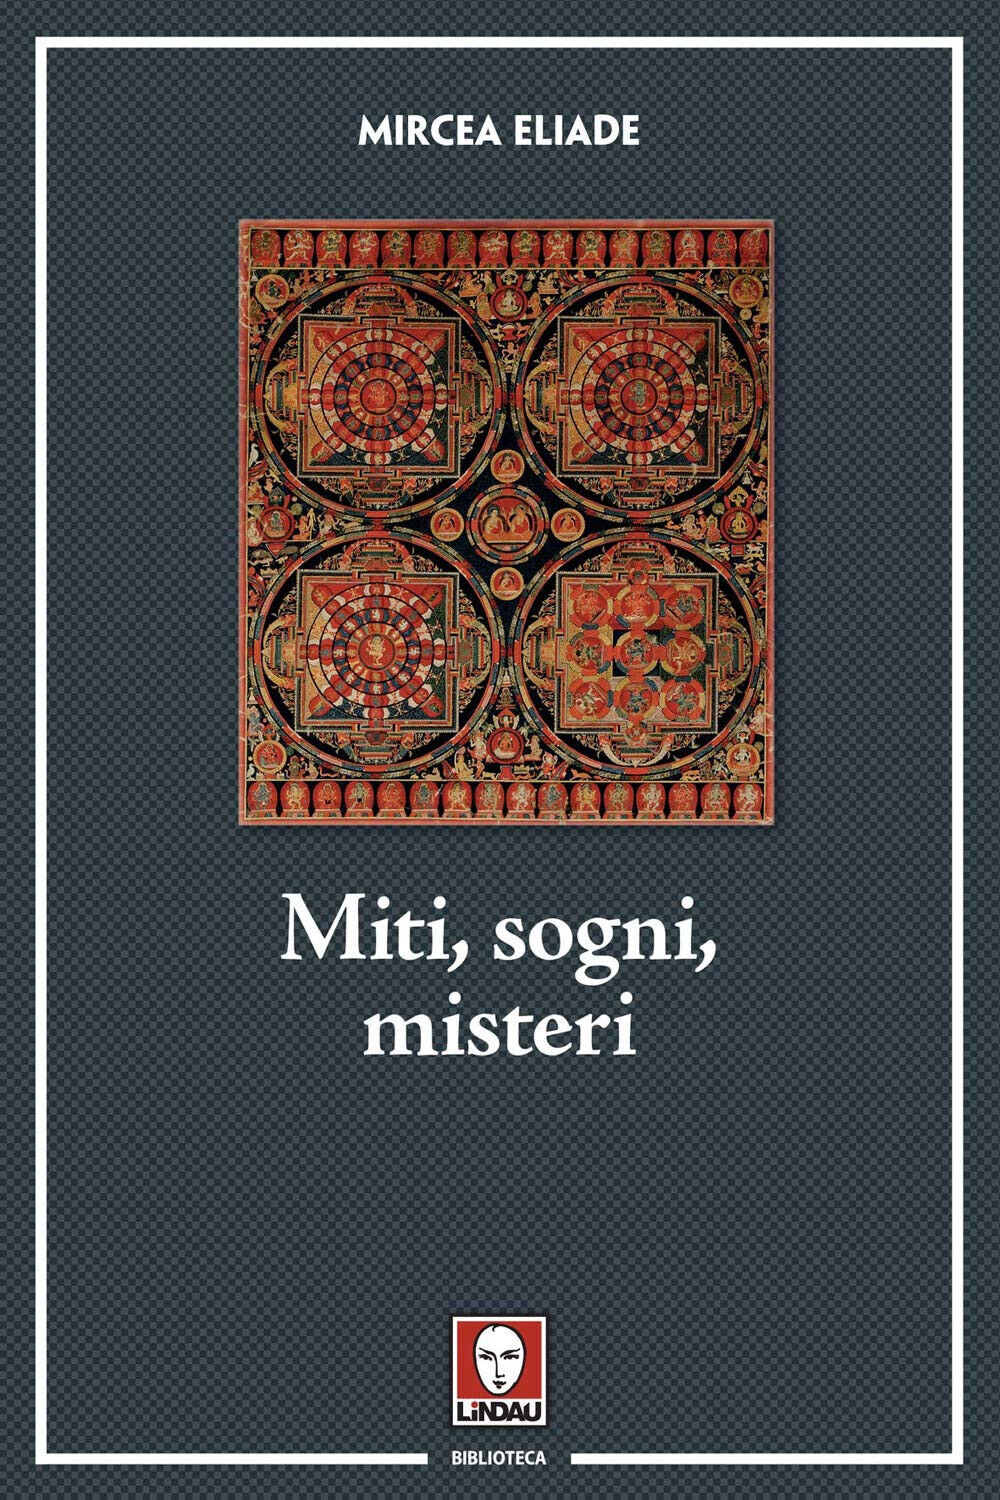 Miti, sogni, misteri - Mircea Eliade - Lindau, 2020